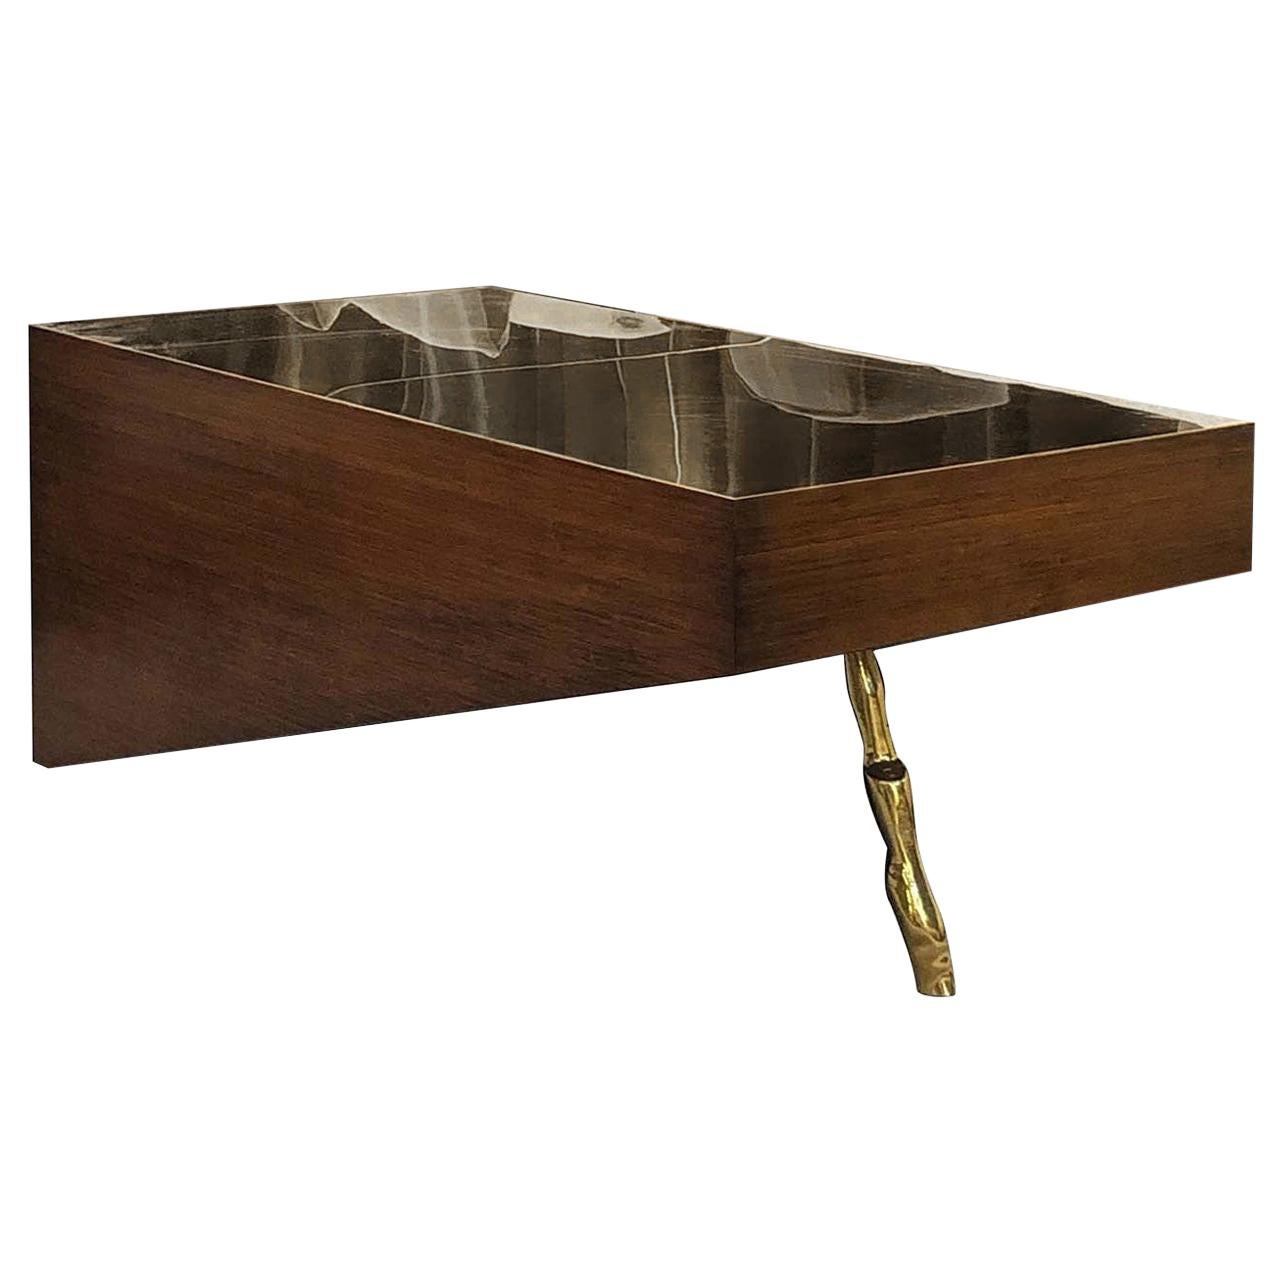 D/Zen Table basse rectangulaire or et brun par CTRLZAK